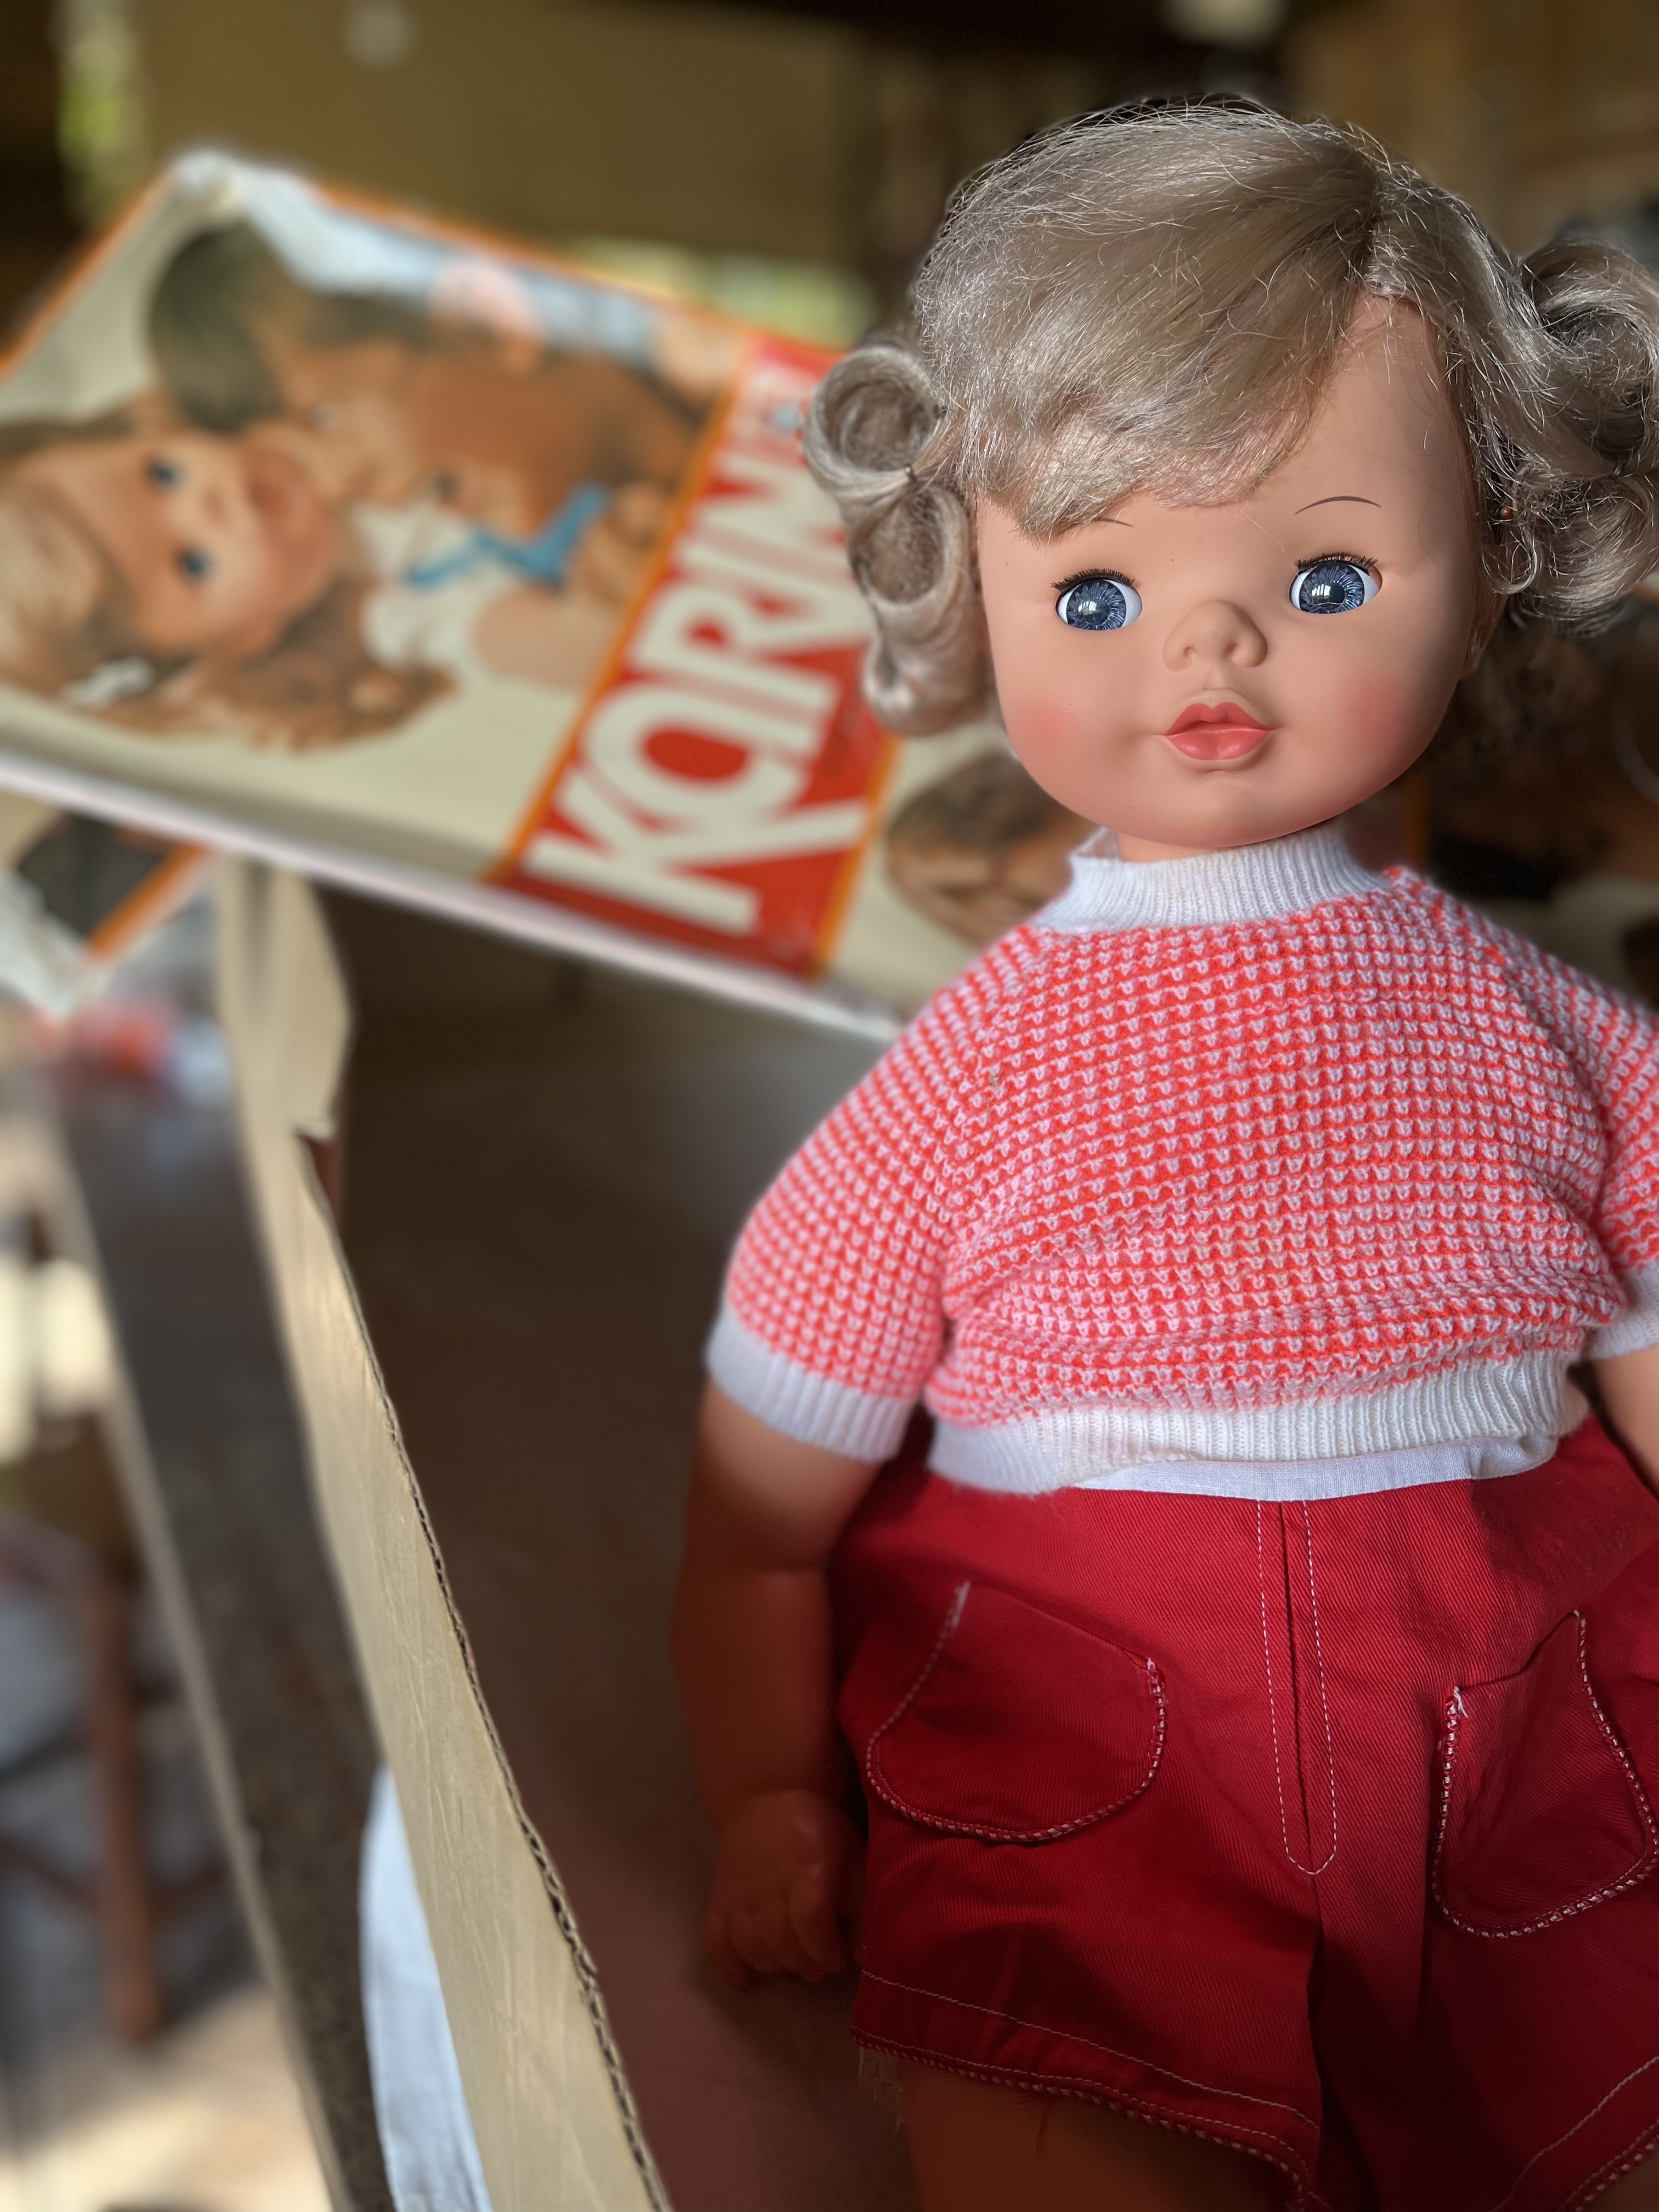 Antiga boneca Doll estrela 29cm anos 80 ( ler descrição